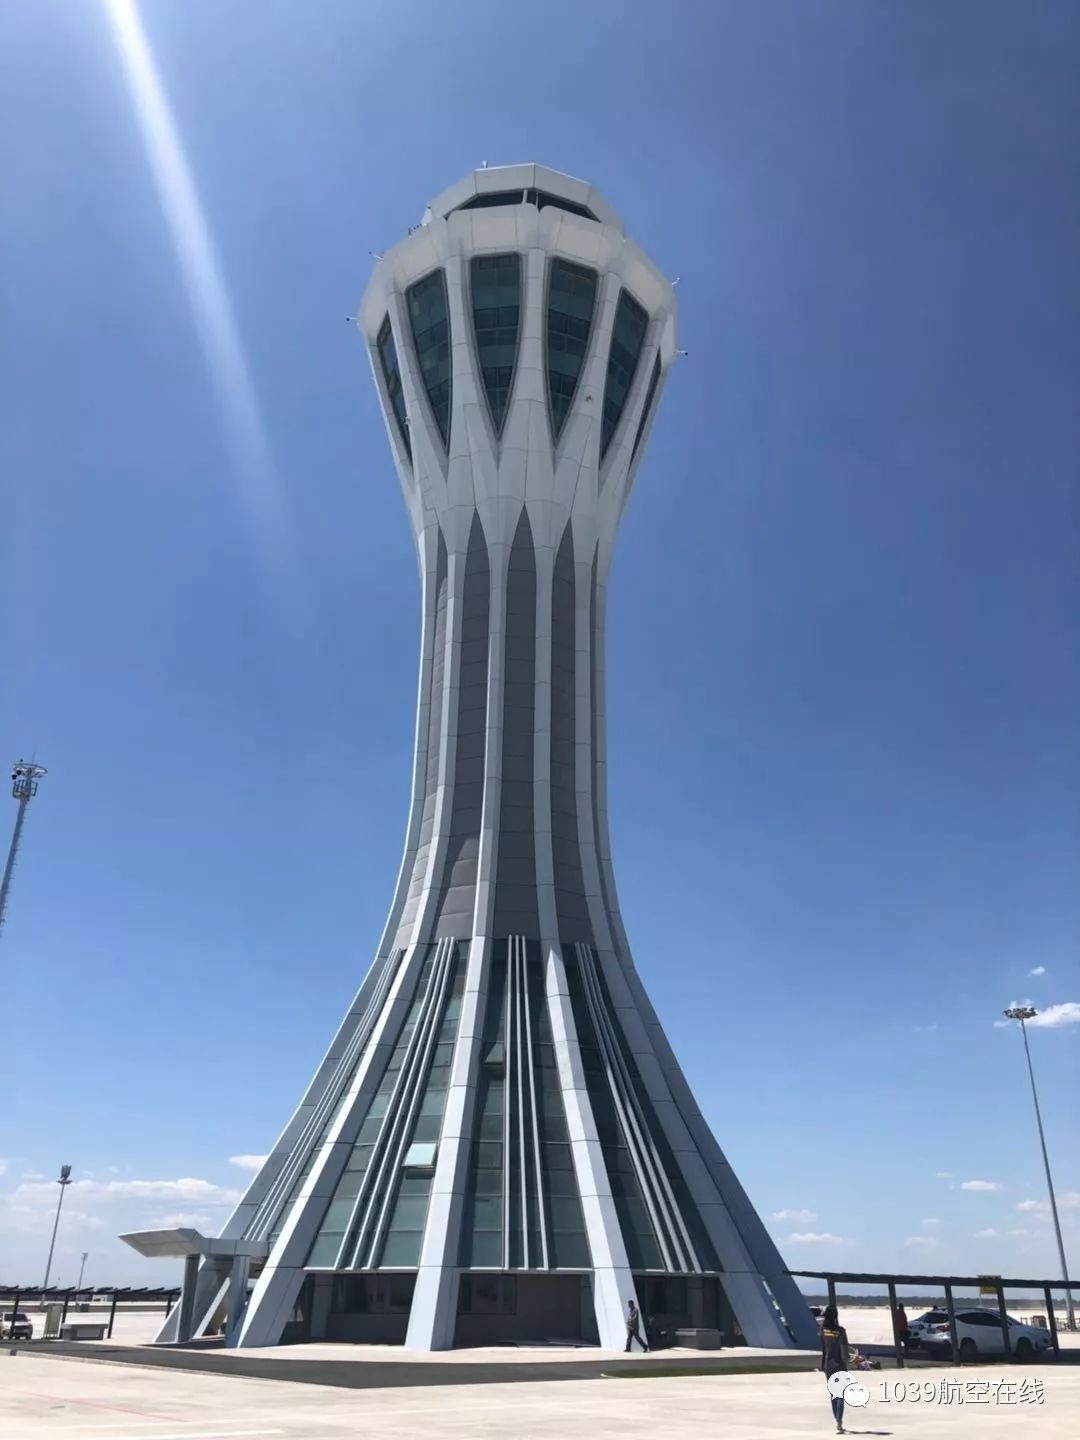 独家凤凰之眼大兴国际机场塔台上揭秘最新竣工航站楼